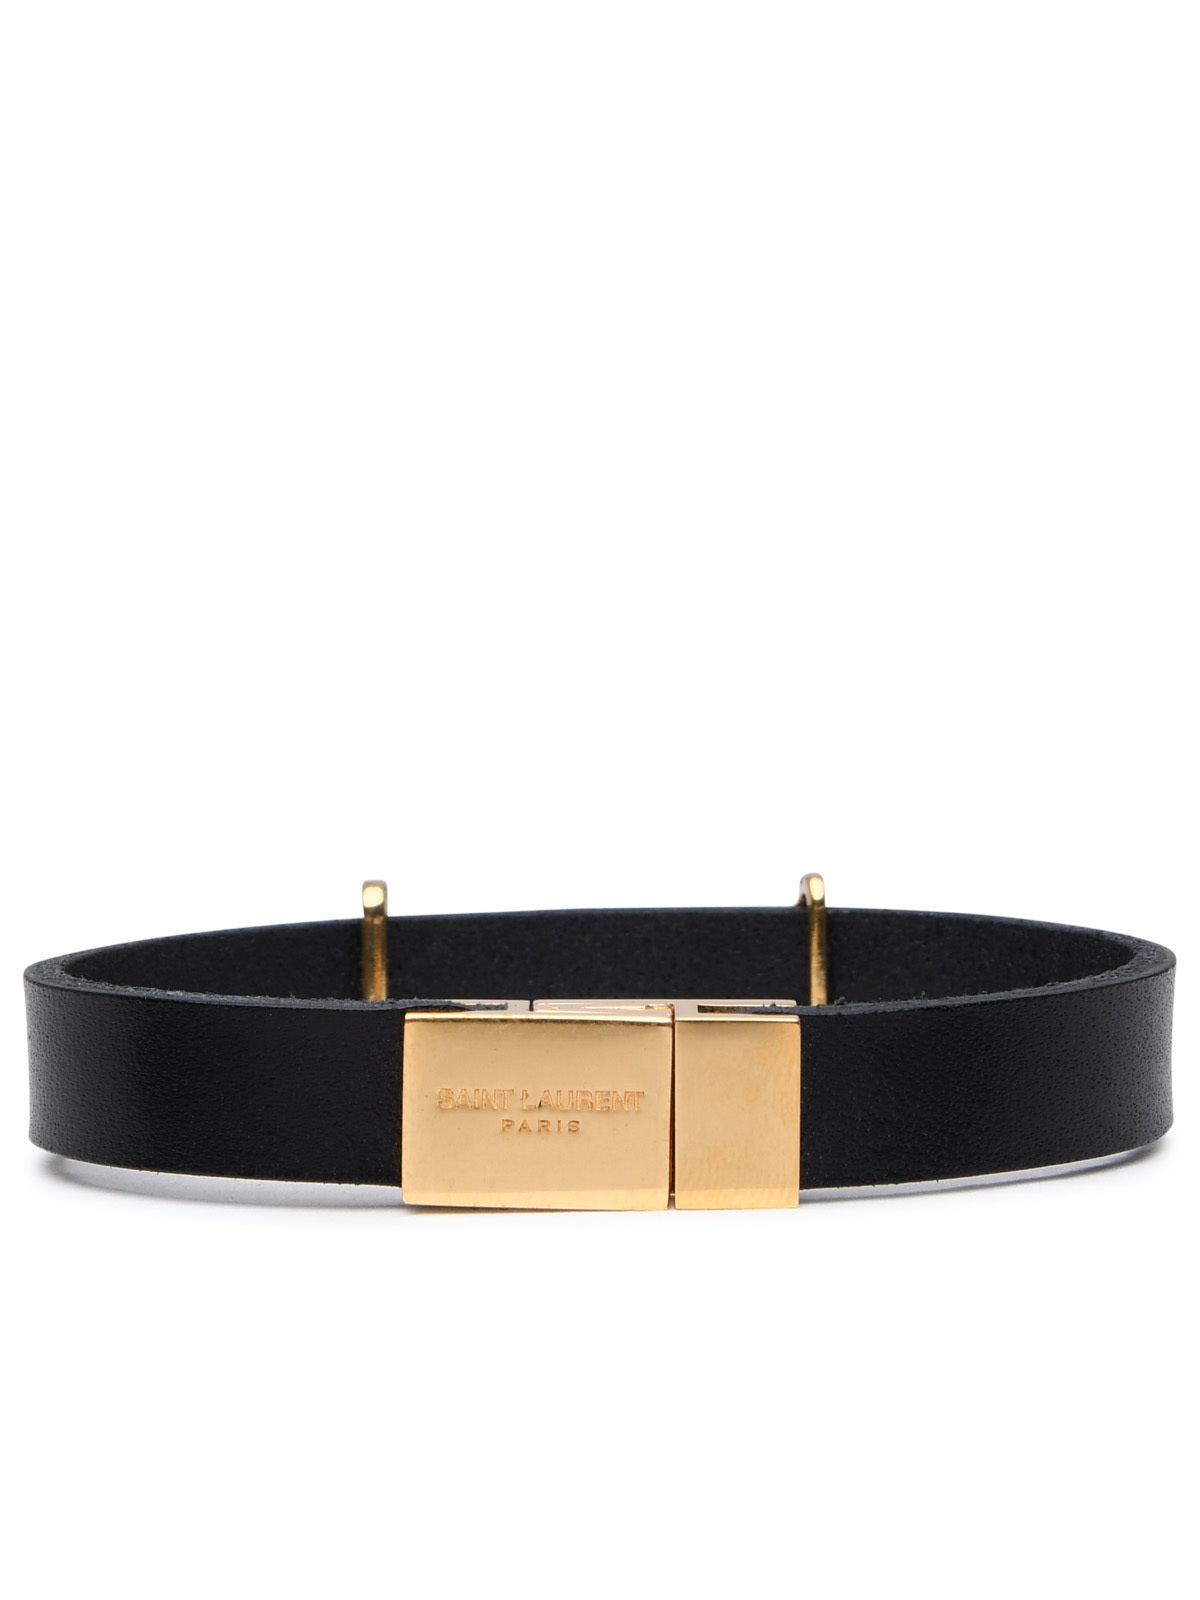 Saint Laurent Woman Black Leather Bracelet